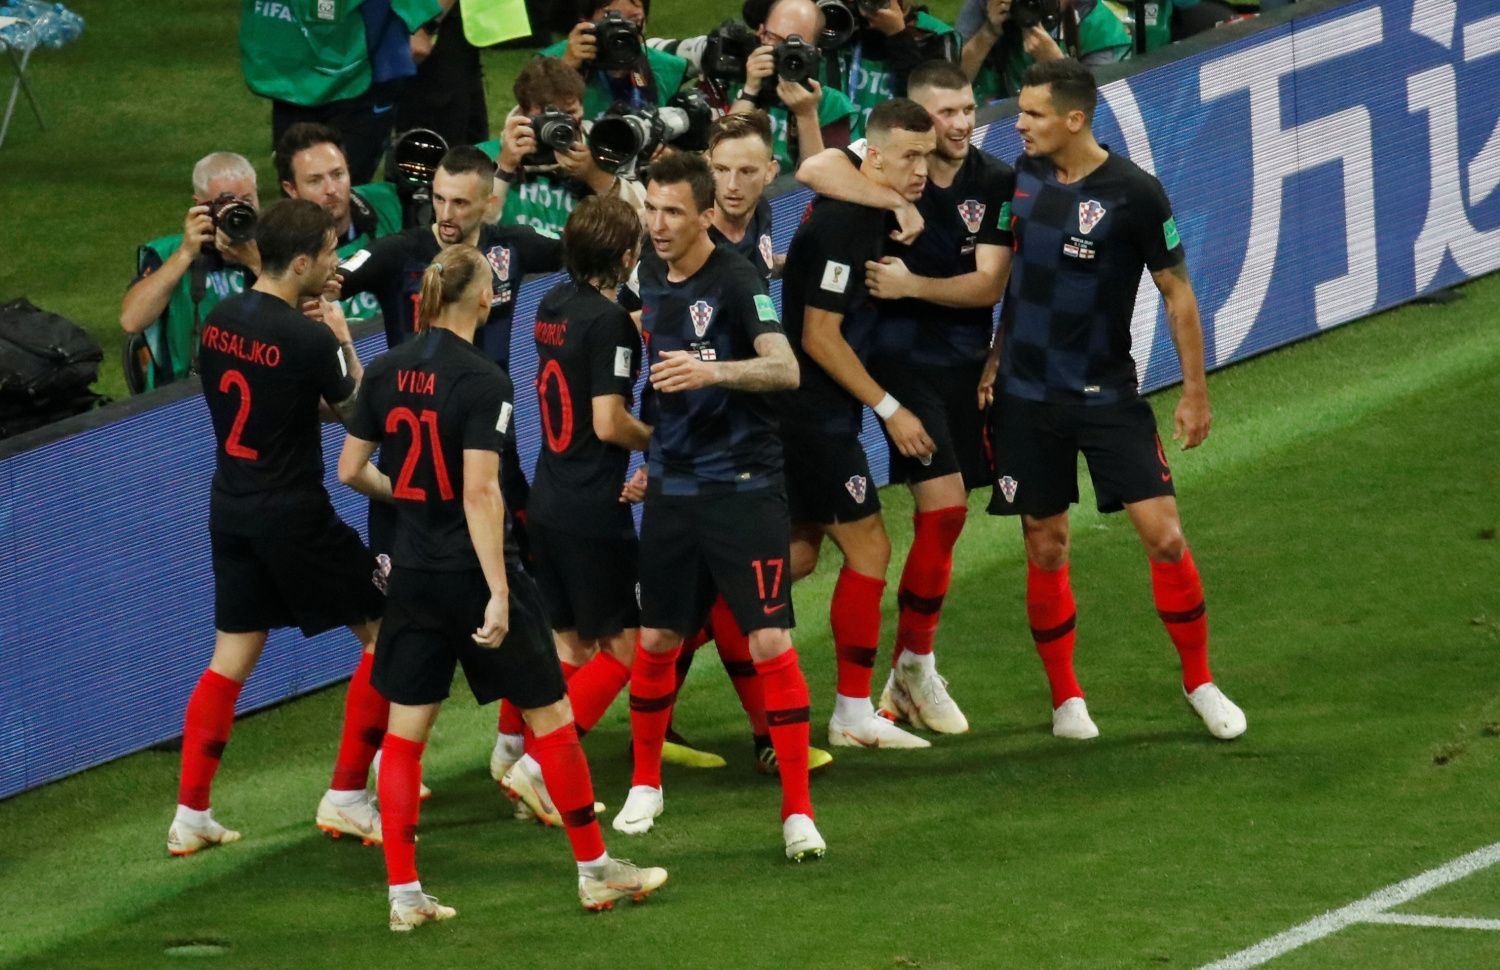 Ivan Perišič slaví gól v semifinále MS 2018 Chorvatsko - Anglie